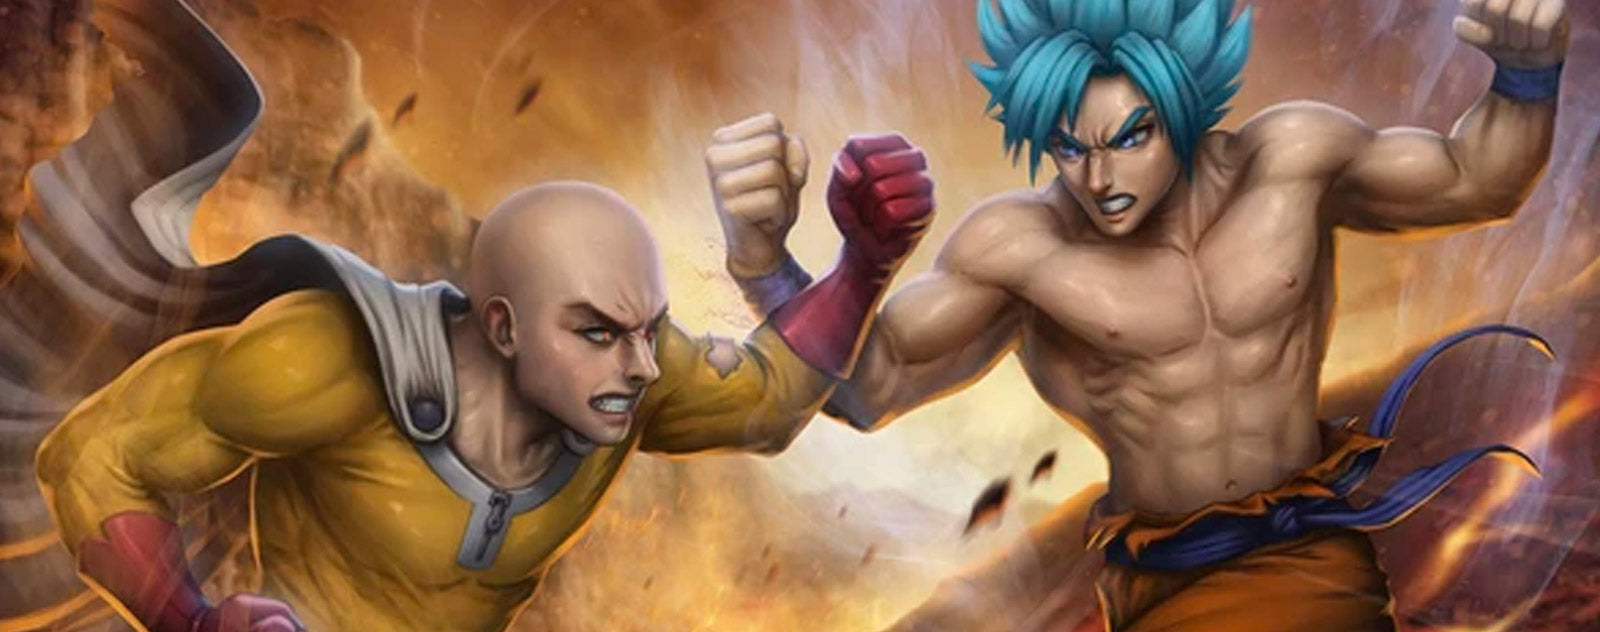 Goku vs. Saitama